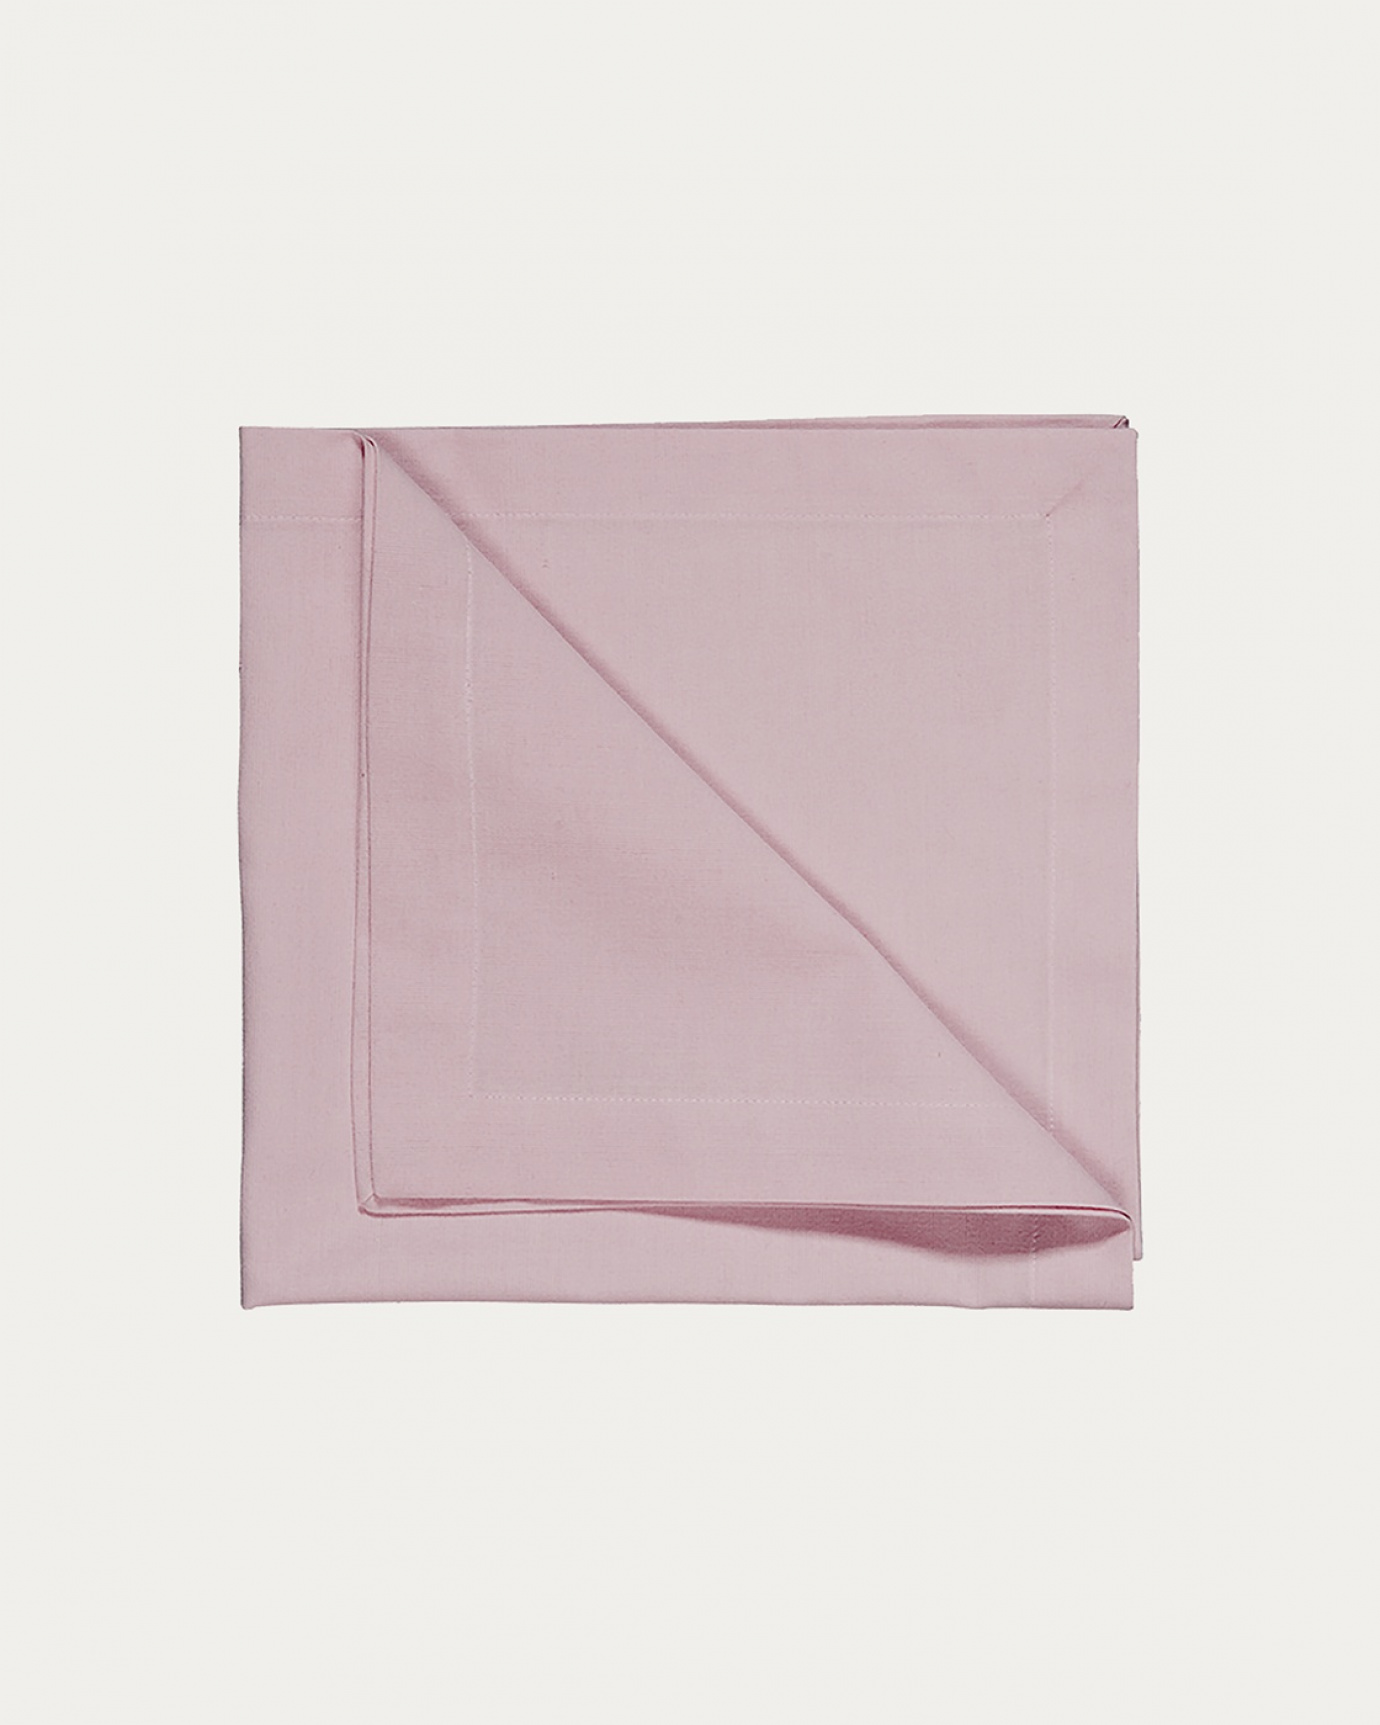 Immagine prodotto rosa chiaro ROBERT tovagliolo in morbido cotone di LINUM DESIGN. Dimensioni 45x45 cm e venduto in 4-pezzi.